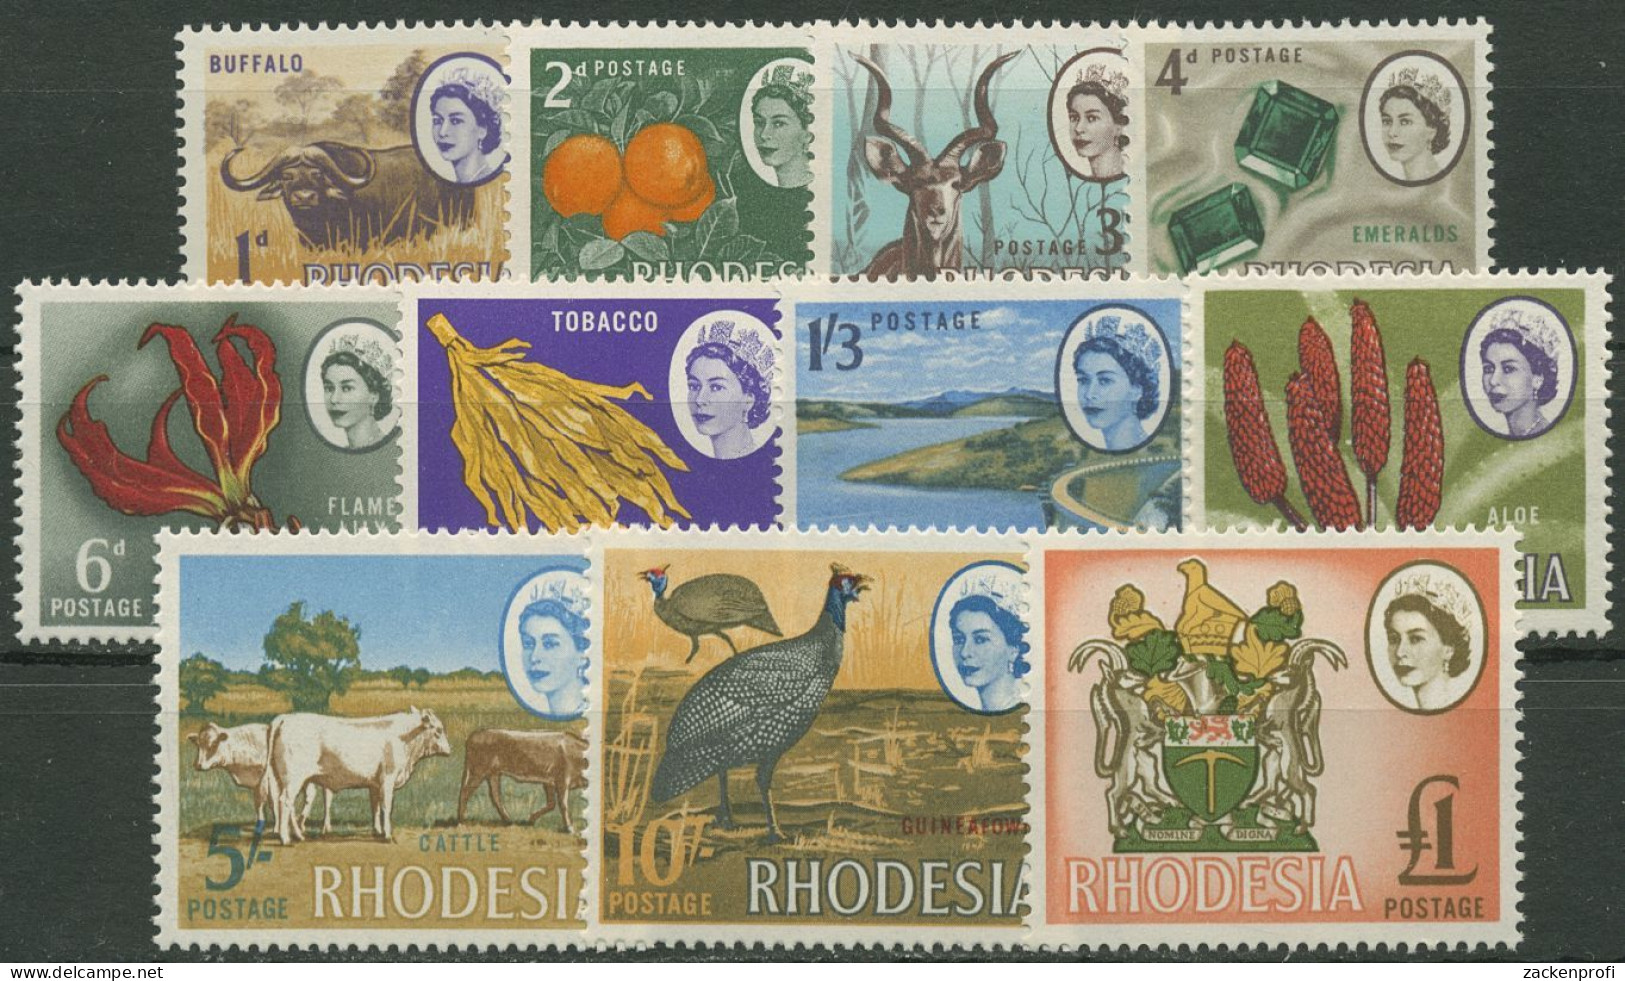 Rhodesien 1966 Landesmotive Rinder Tabak Kyle-See, Offsetdruck 46/56 Postfrisch - Rhodesia (1964-1980)